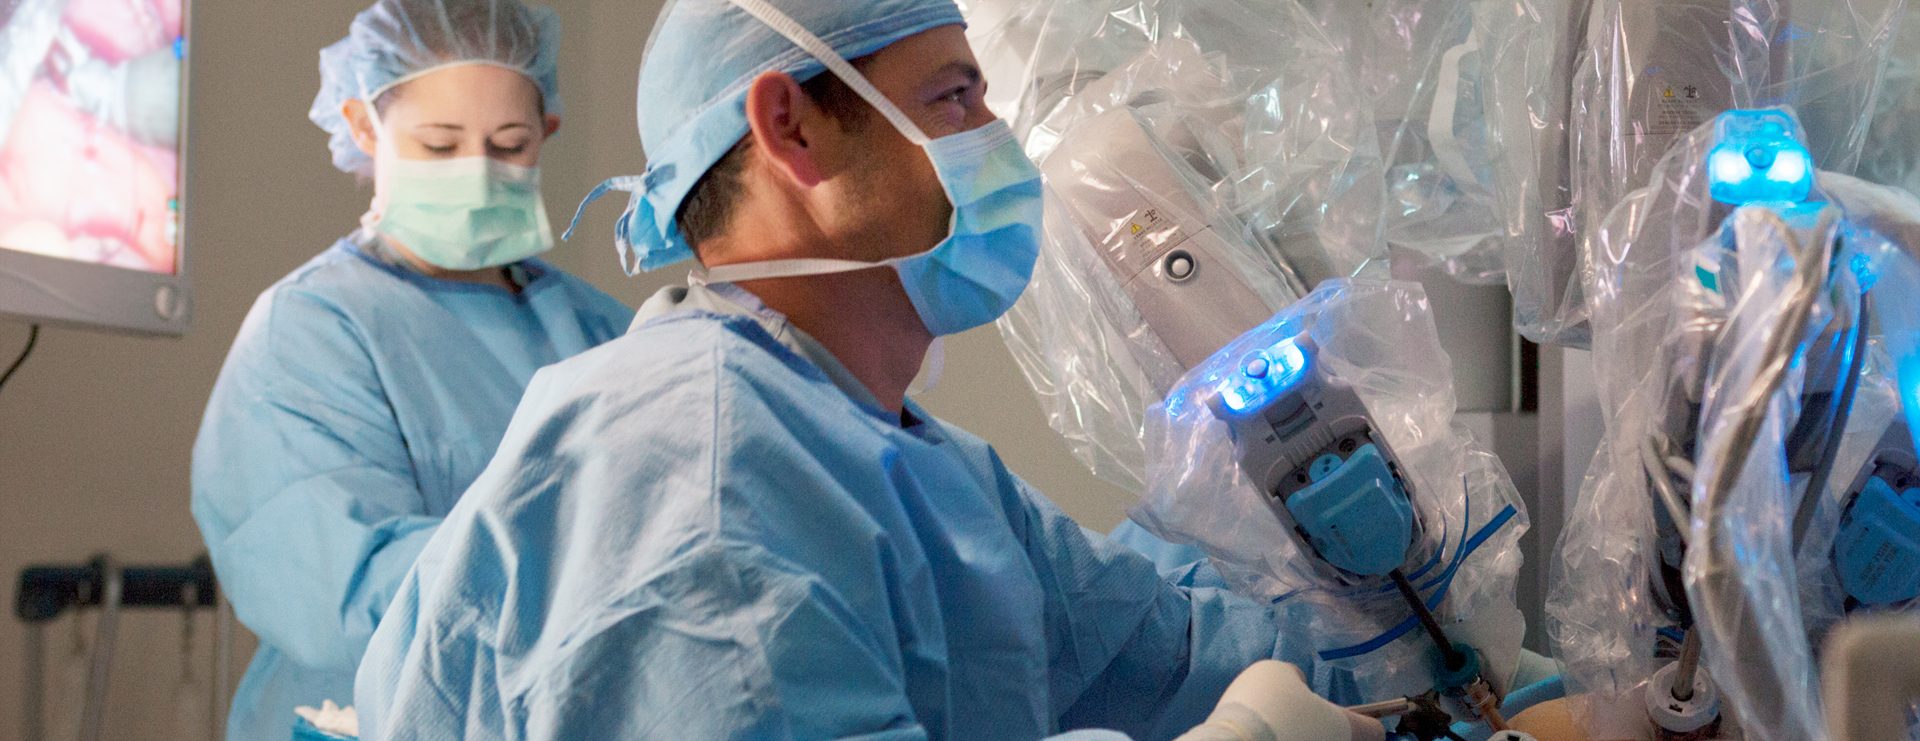 Chirurgie Whipple robotique : une révolution